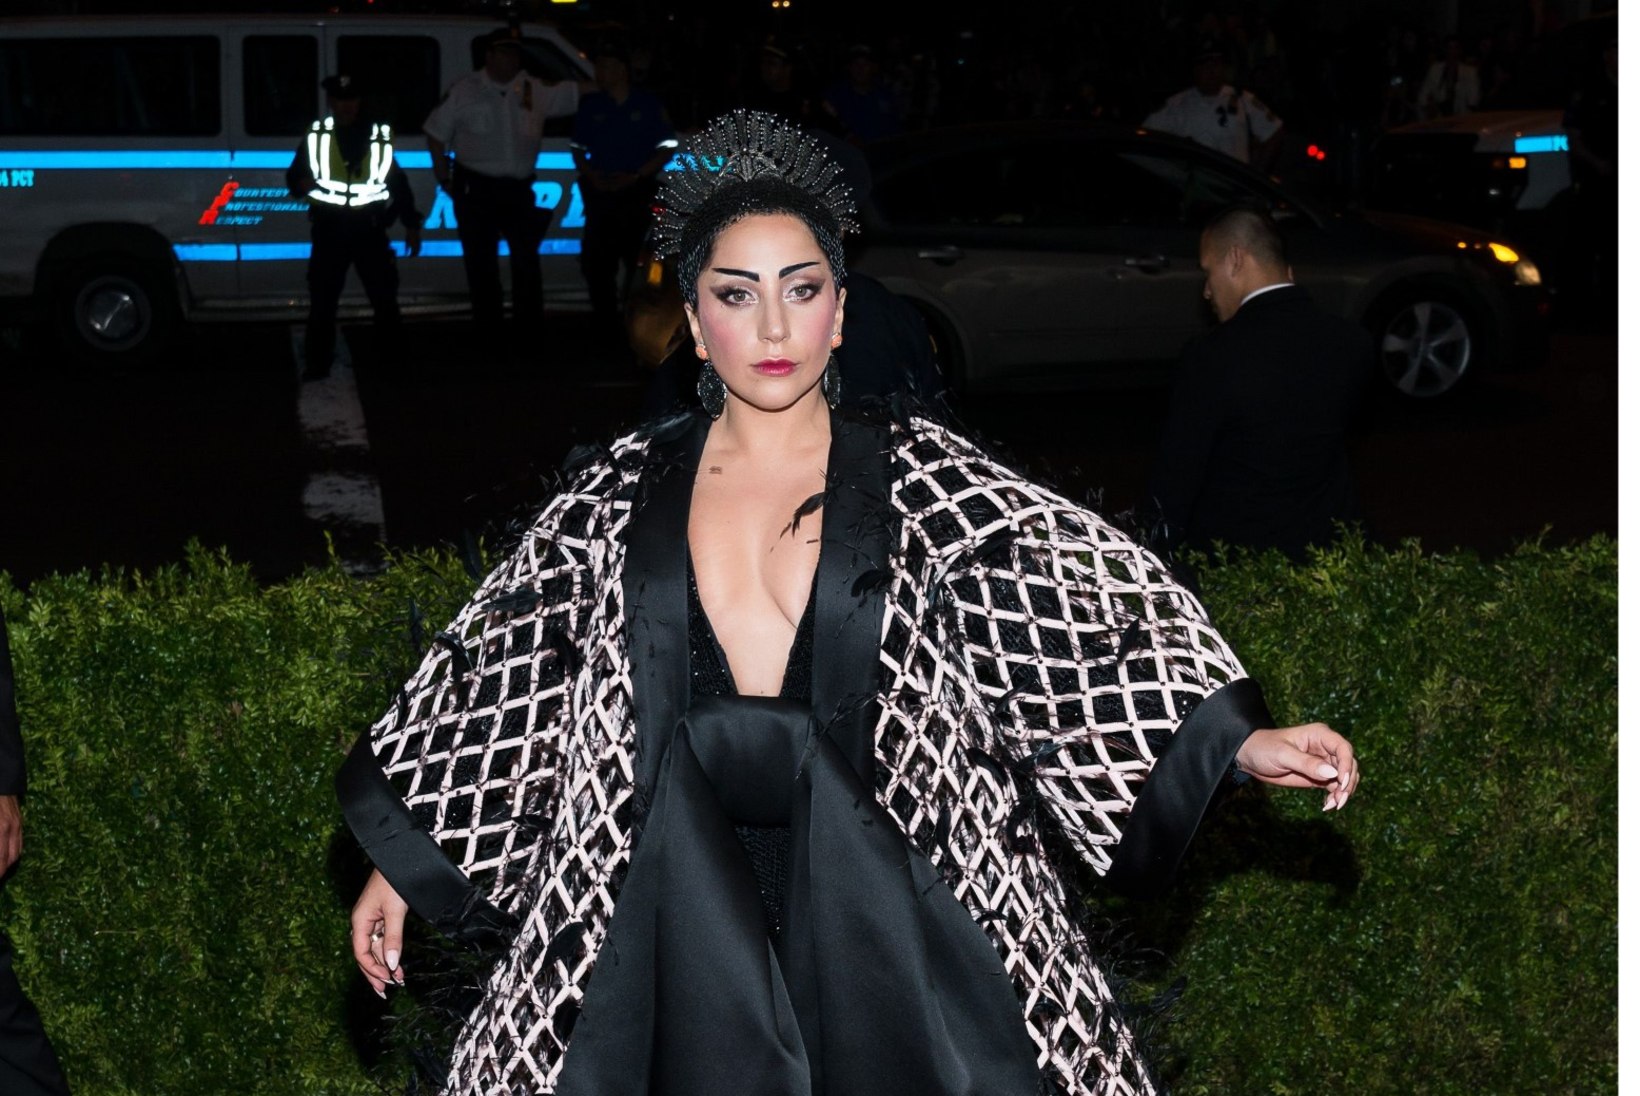 FOTOD | Tagasi normaalsusesse: Lady Gaga kandis ka lihtsureliku selga passivat kleiti 